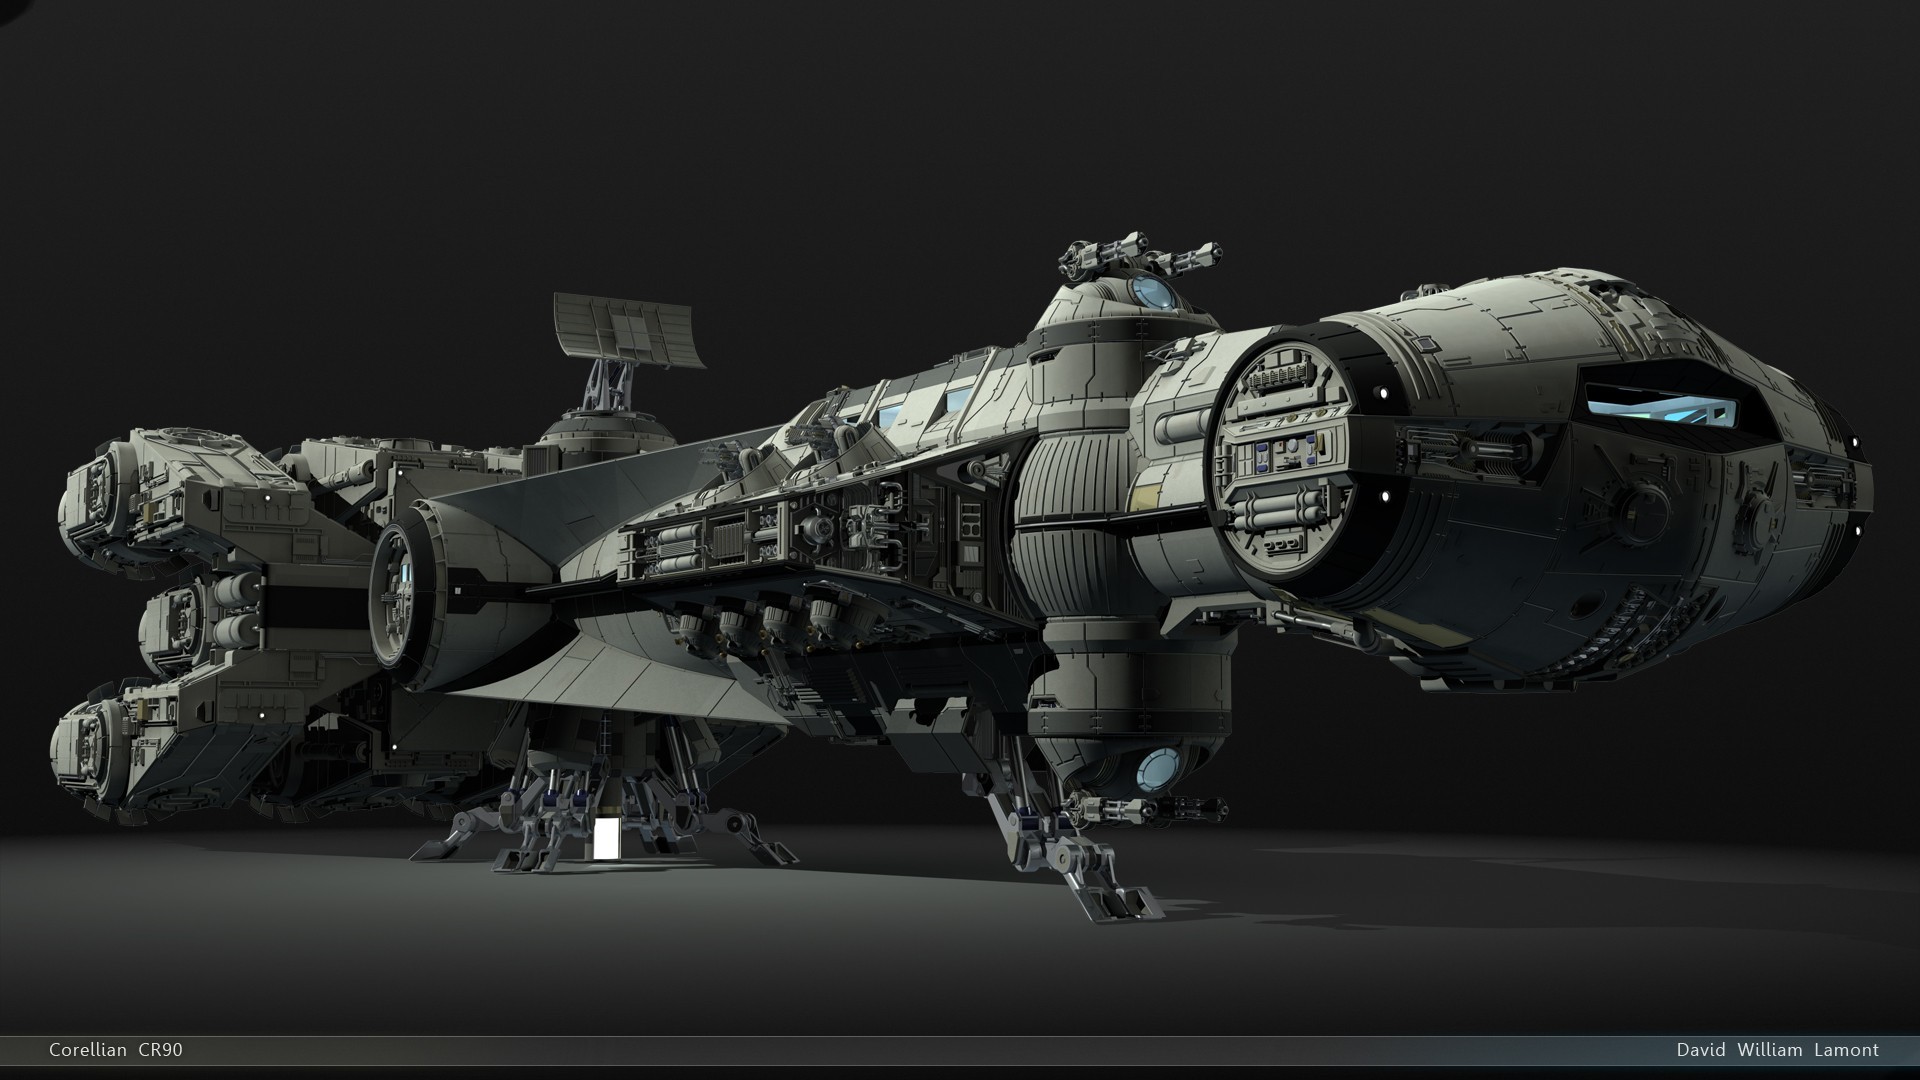 1920x1080 General  Star Wars spaceship render CGI artwork simple background  digital art 3D Rebel Alliance science